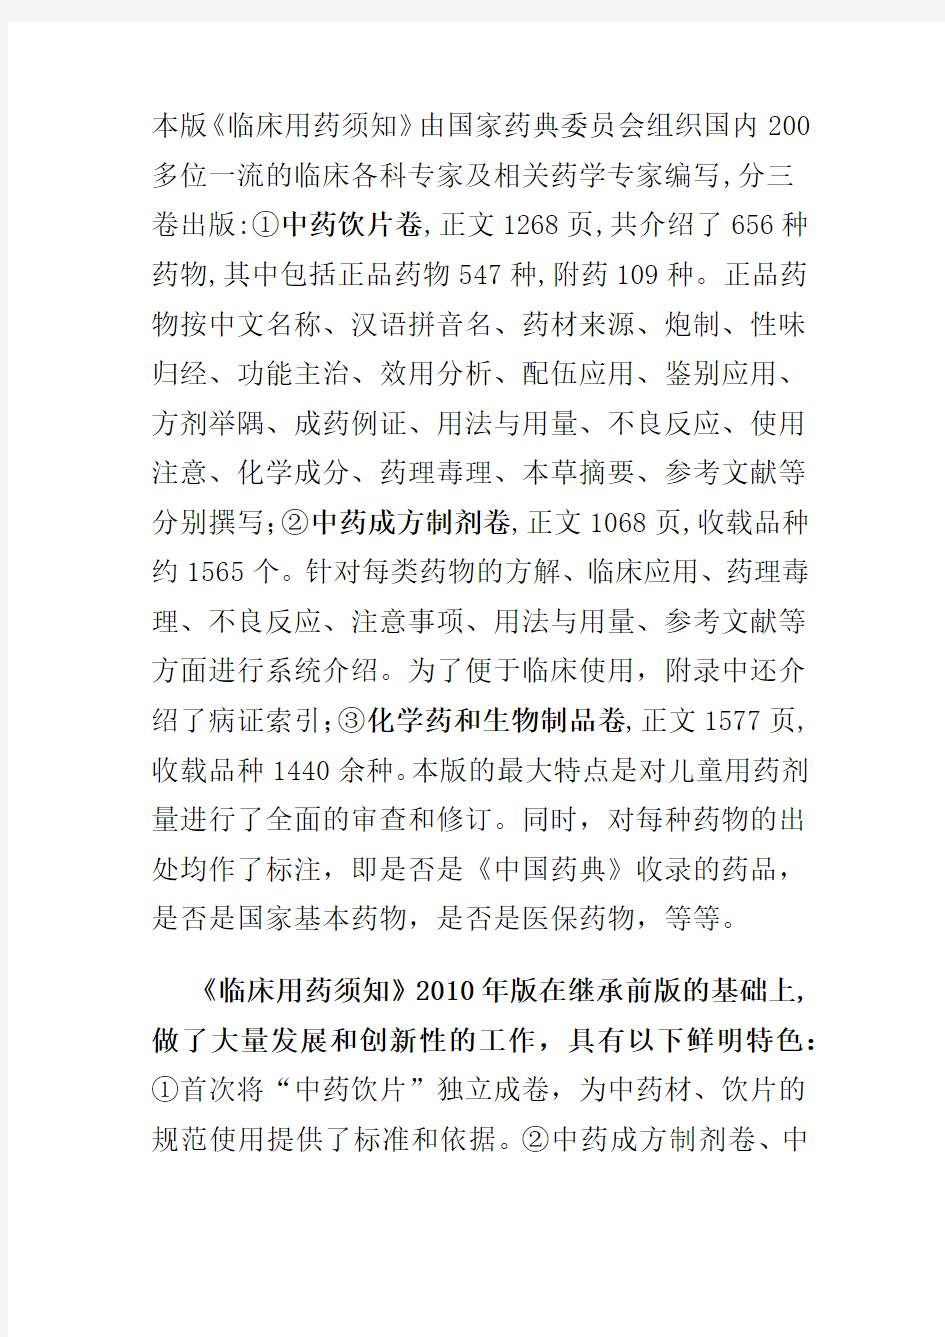 《中华人民共和国药典临床用药须知》2010年版